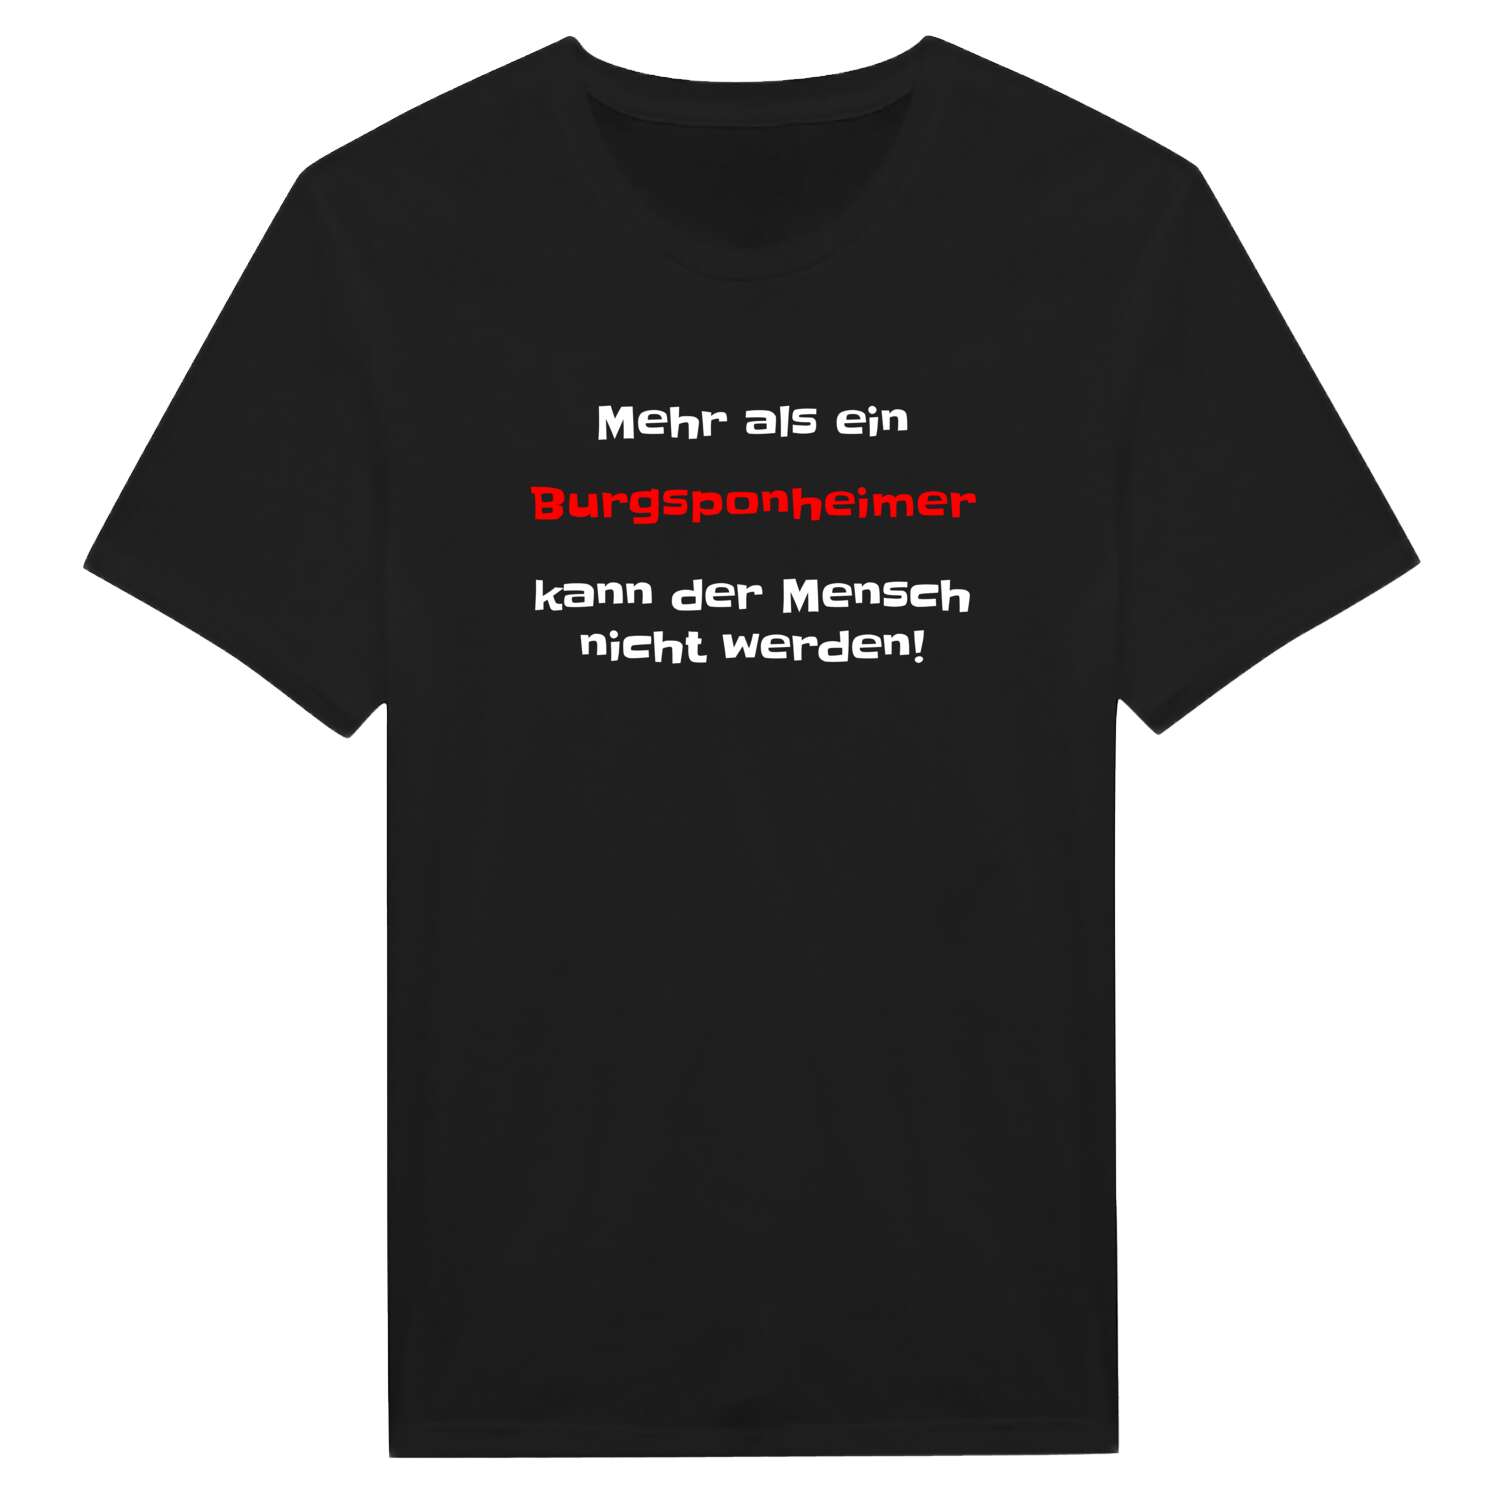 Burgsponheim T-Shirt »Mehr als ein«